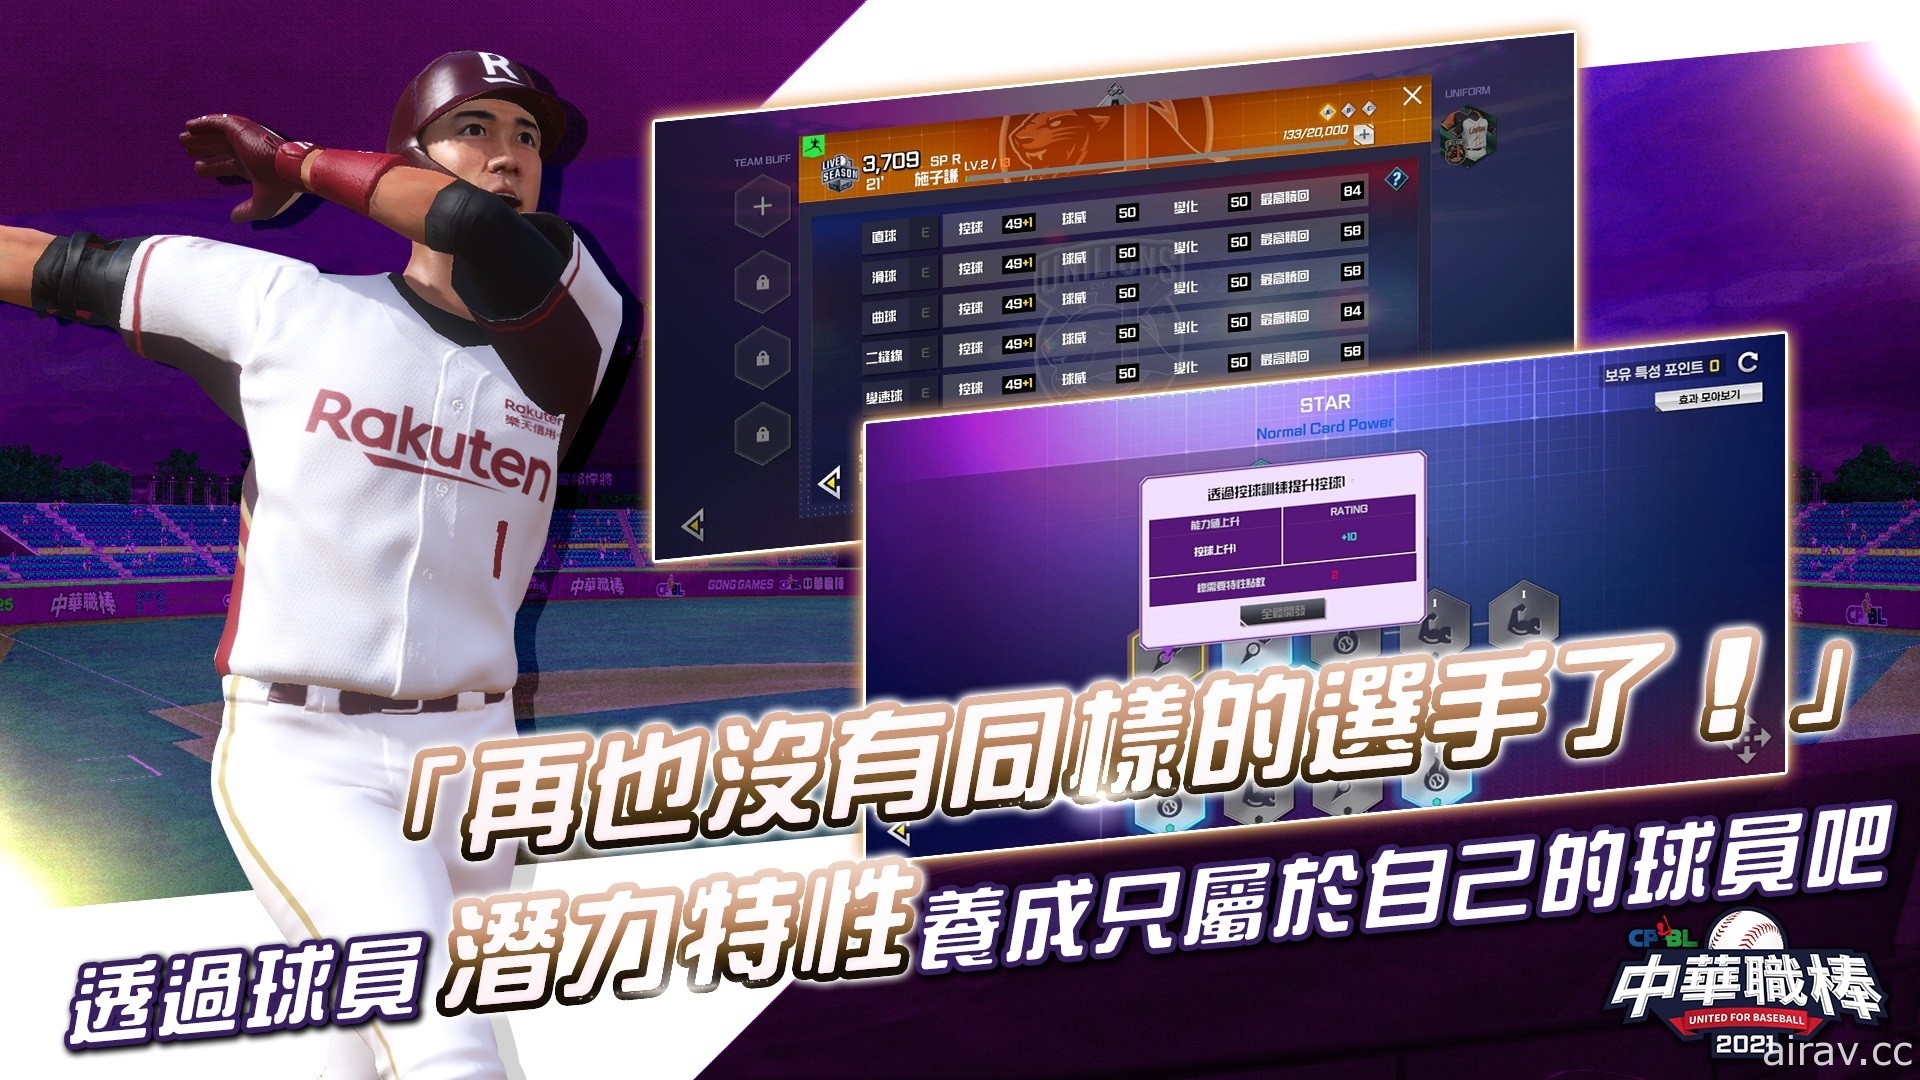 拟真棒球游戏《CPBL 中华职棒 2021》双平台上市 以动态捕捉技术重现真实球赛